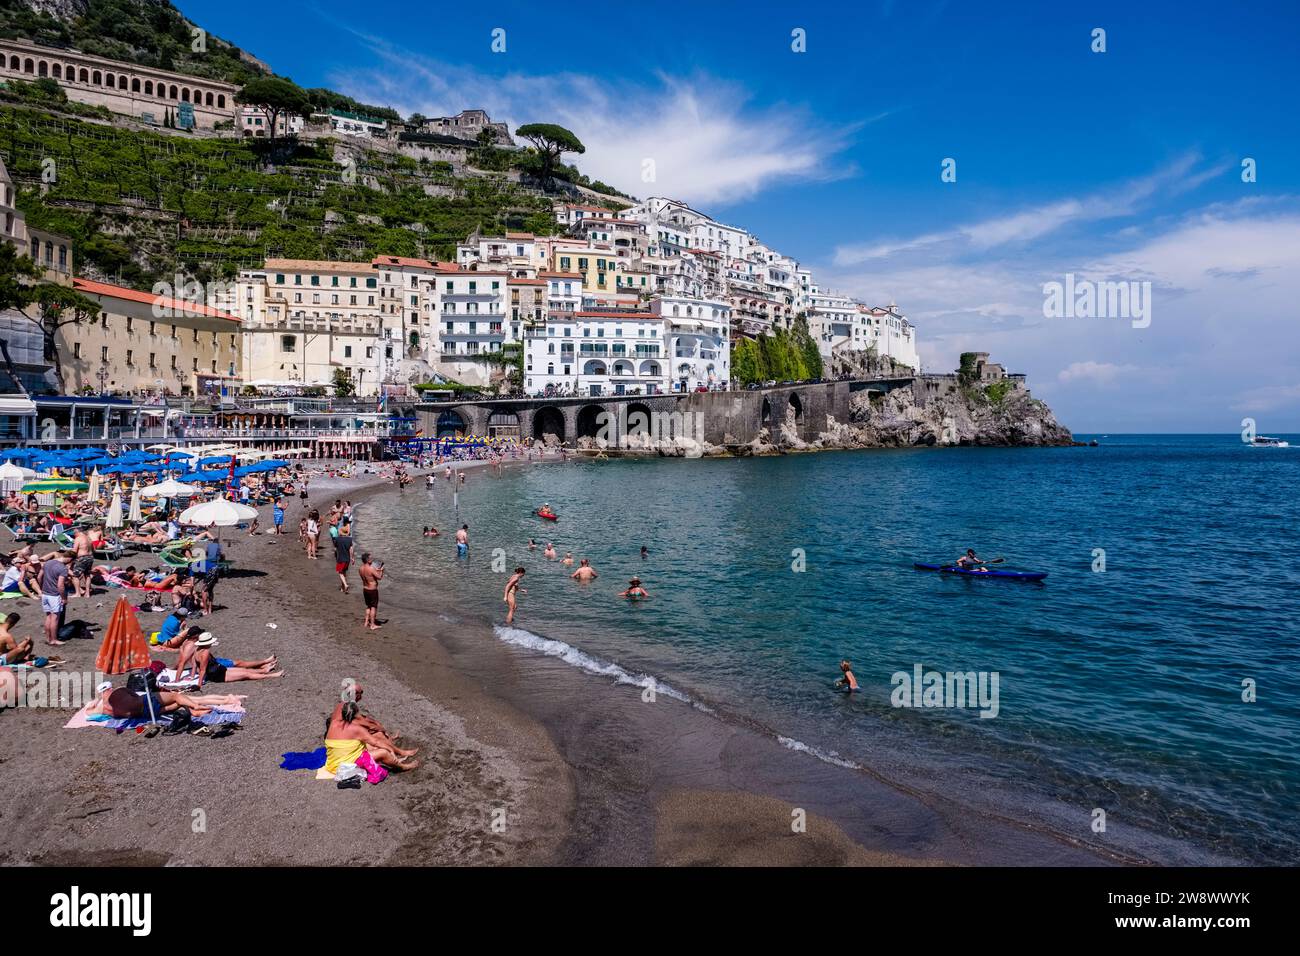 Häuser der Stadt Amalfi an der Amalfiküste, die an der Küste in einem Tal liegt, das zum Mittelmeer führt und über den Strand gesehen wird. Stockfoto